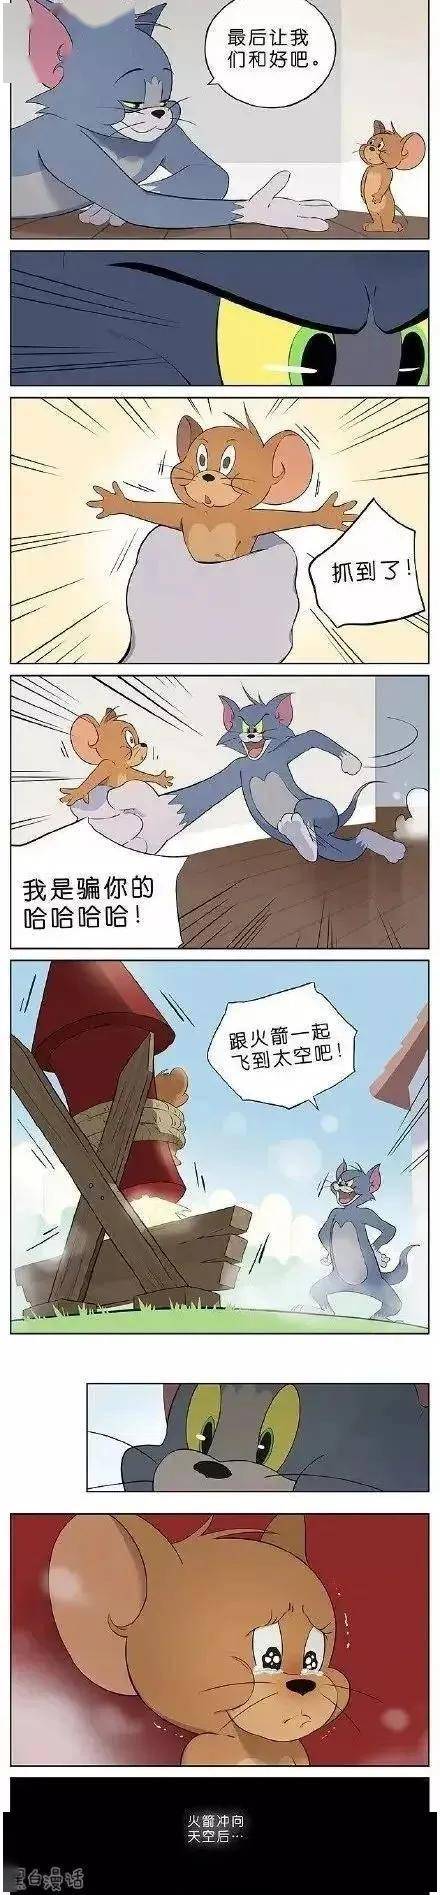 漫画故事(猫鼠火箭小游戏!